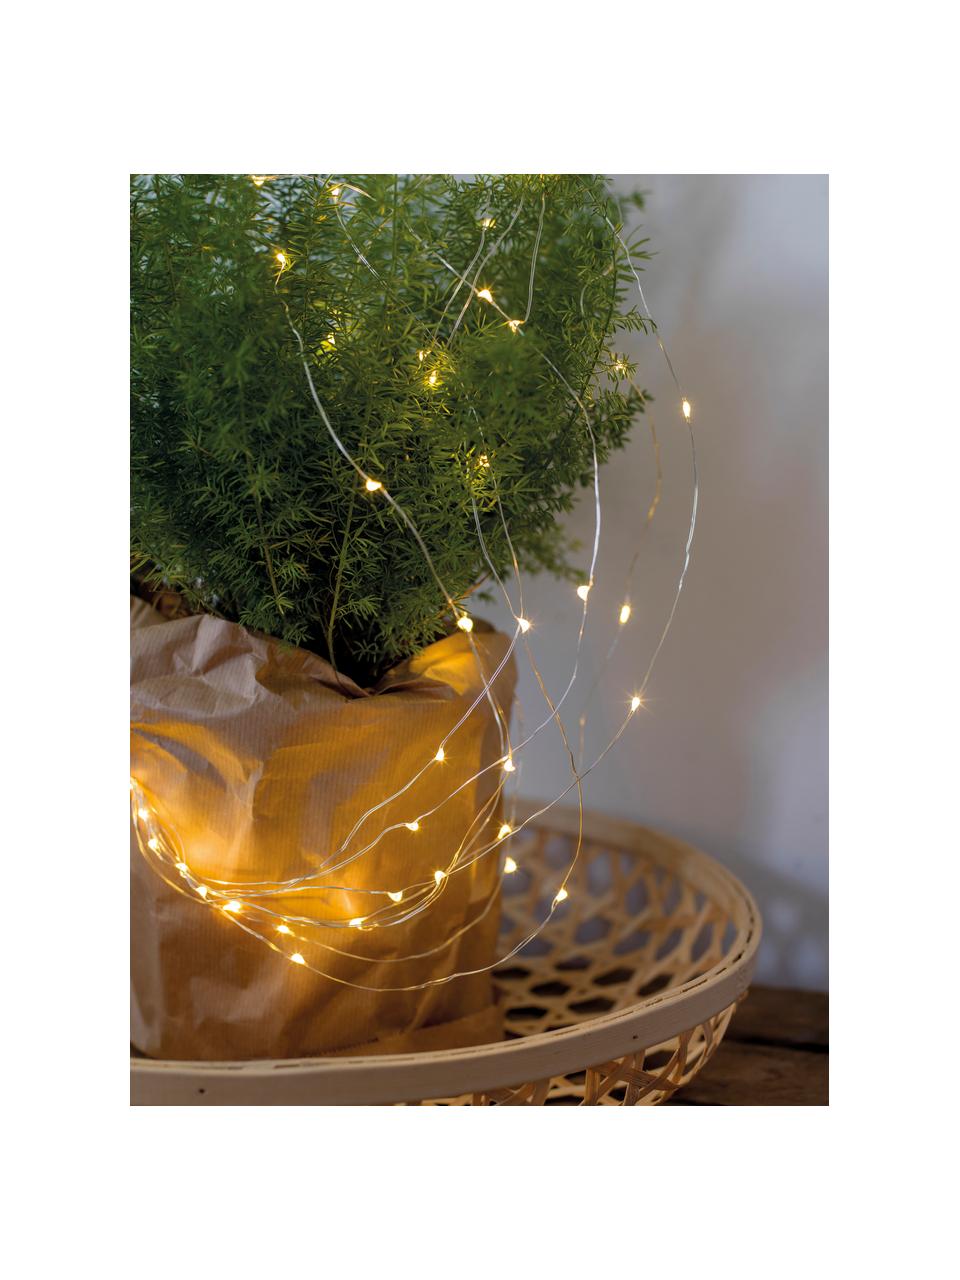 Décoration lumineuse Noël Triny, blanc chaud, Plastique, Transparent, long. 80 cm